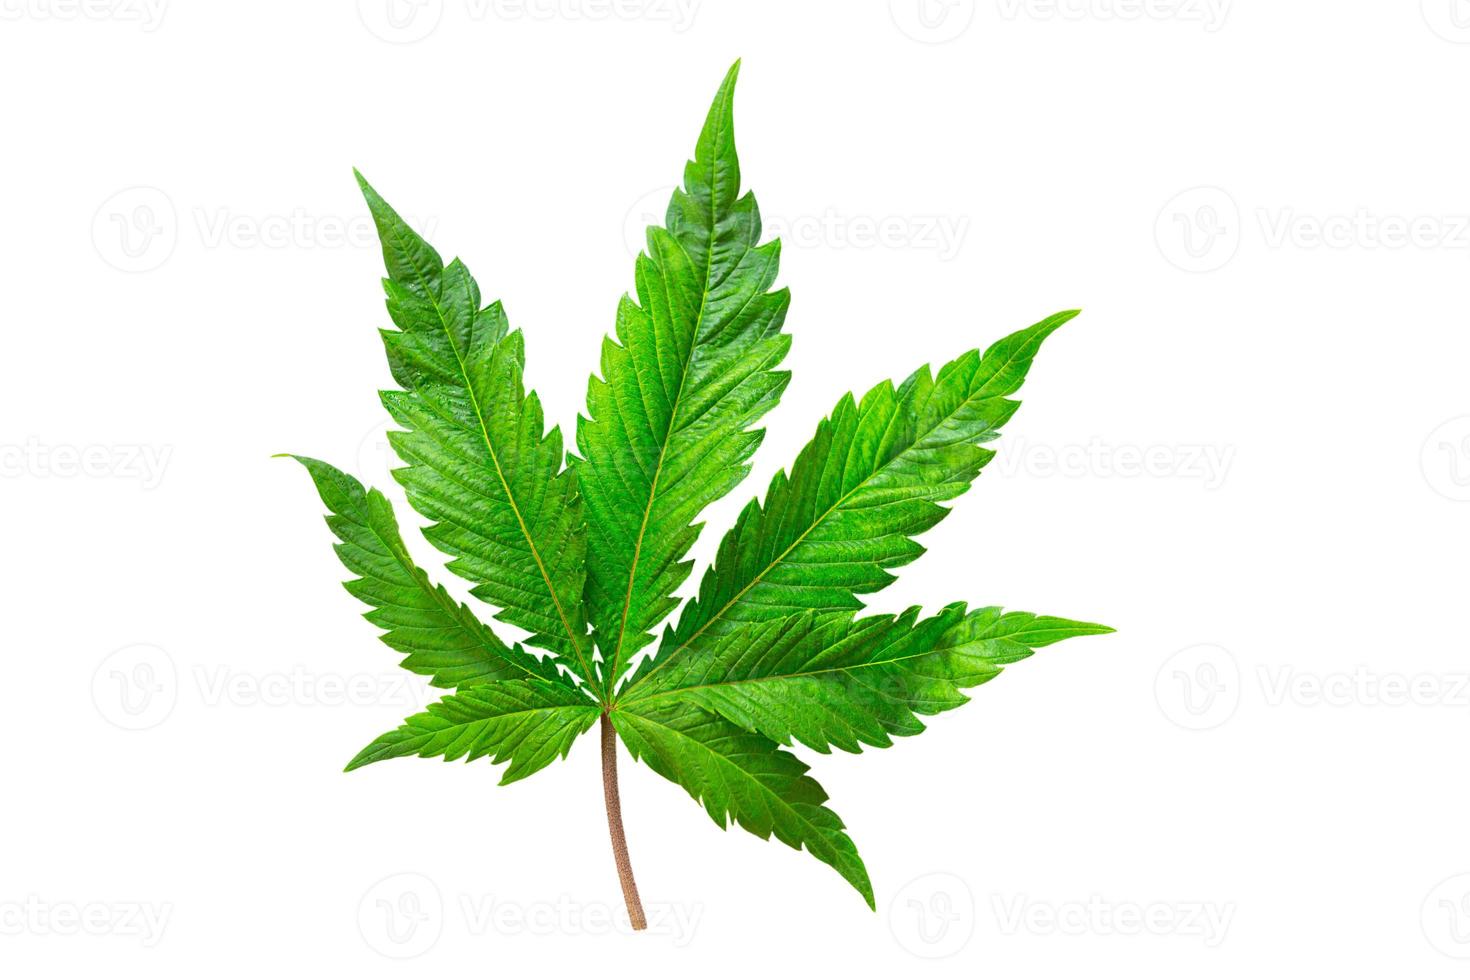 foglia di cannabis su uno sfondo bianco isolato. Le foglie di marijuana medicinale della varietà jack herer sono un ibrido di sativa e indica. foto